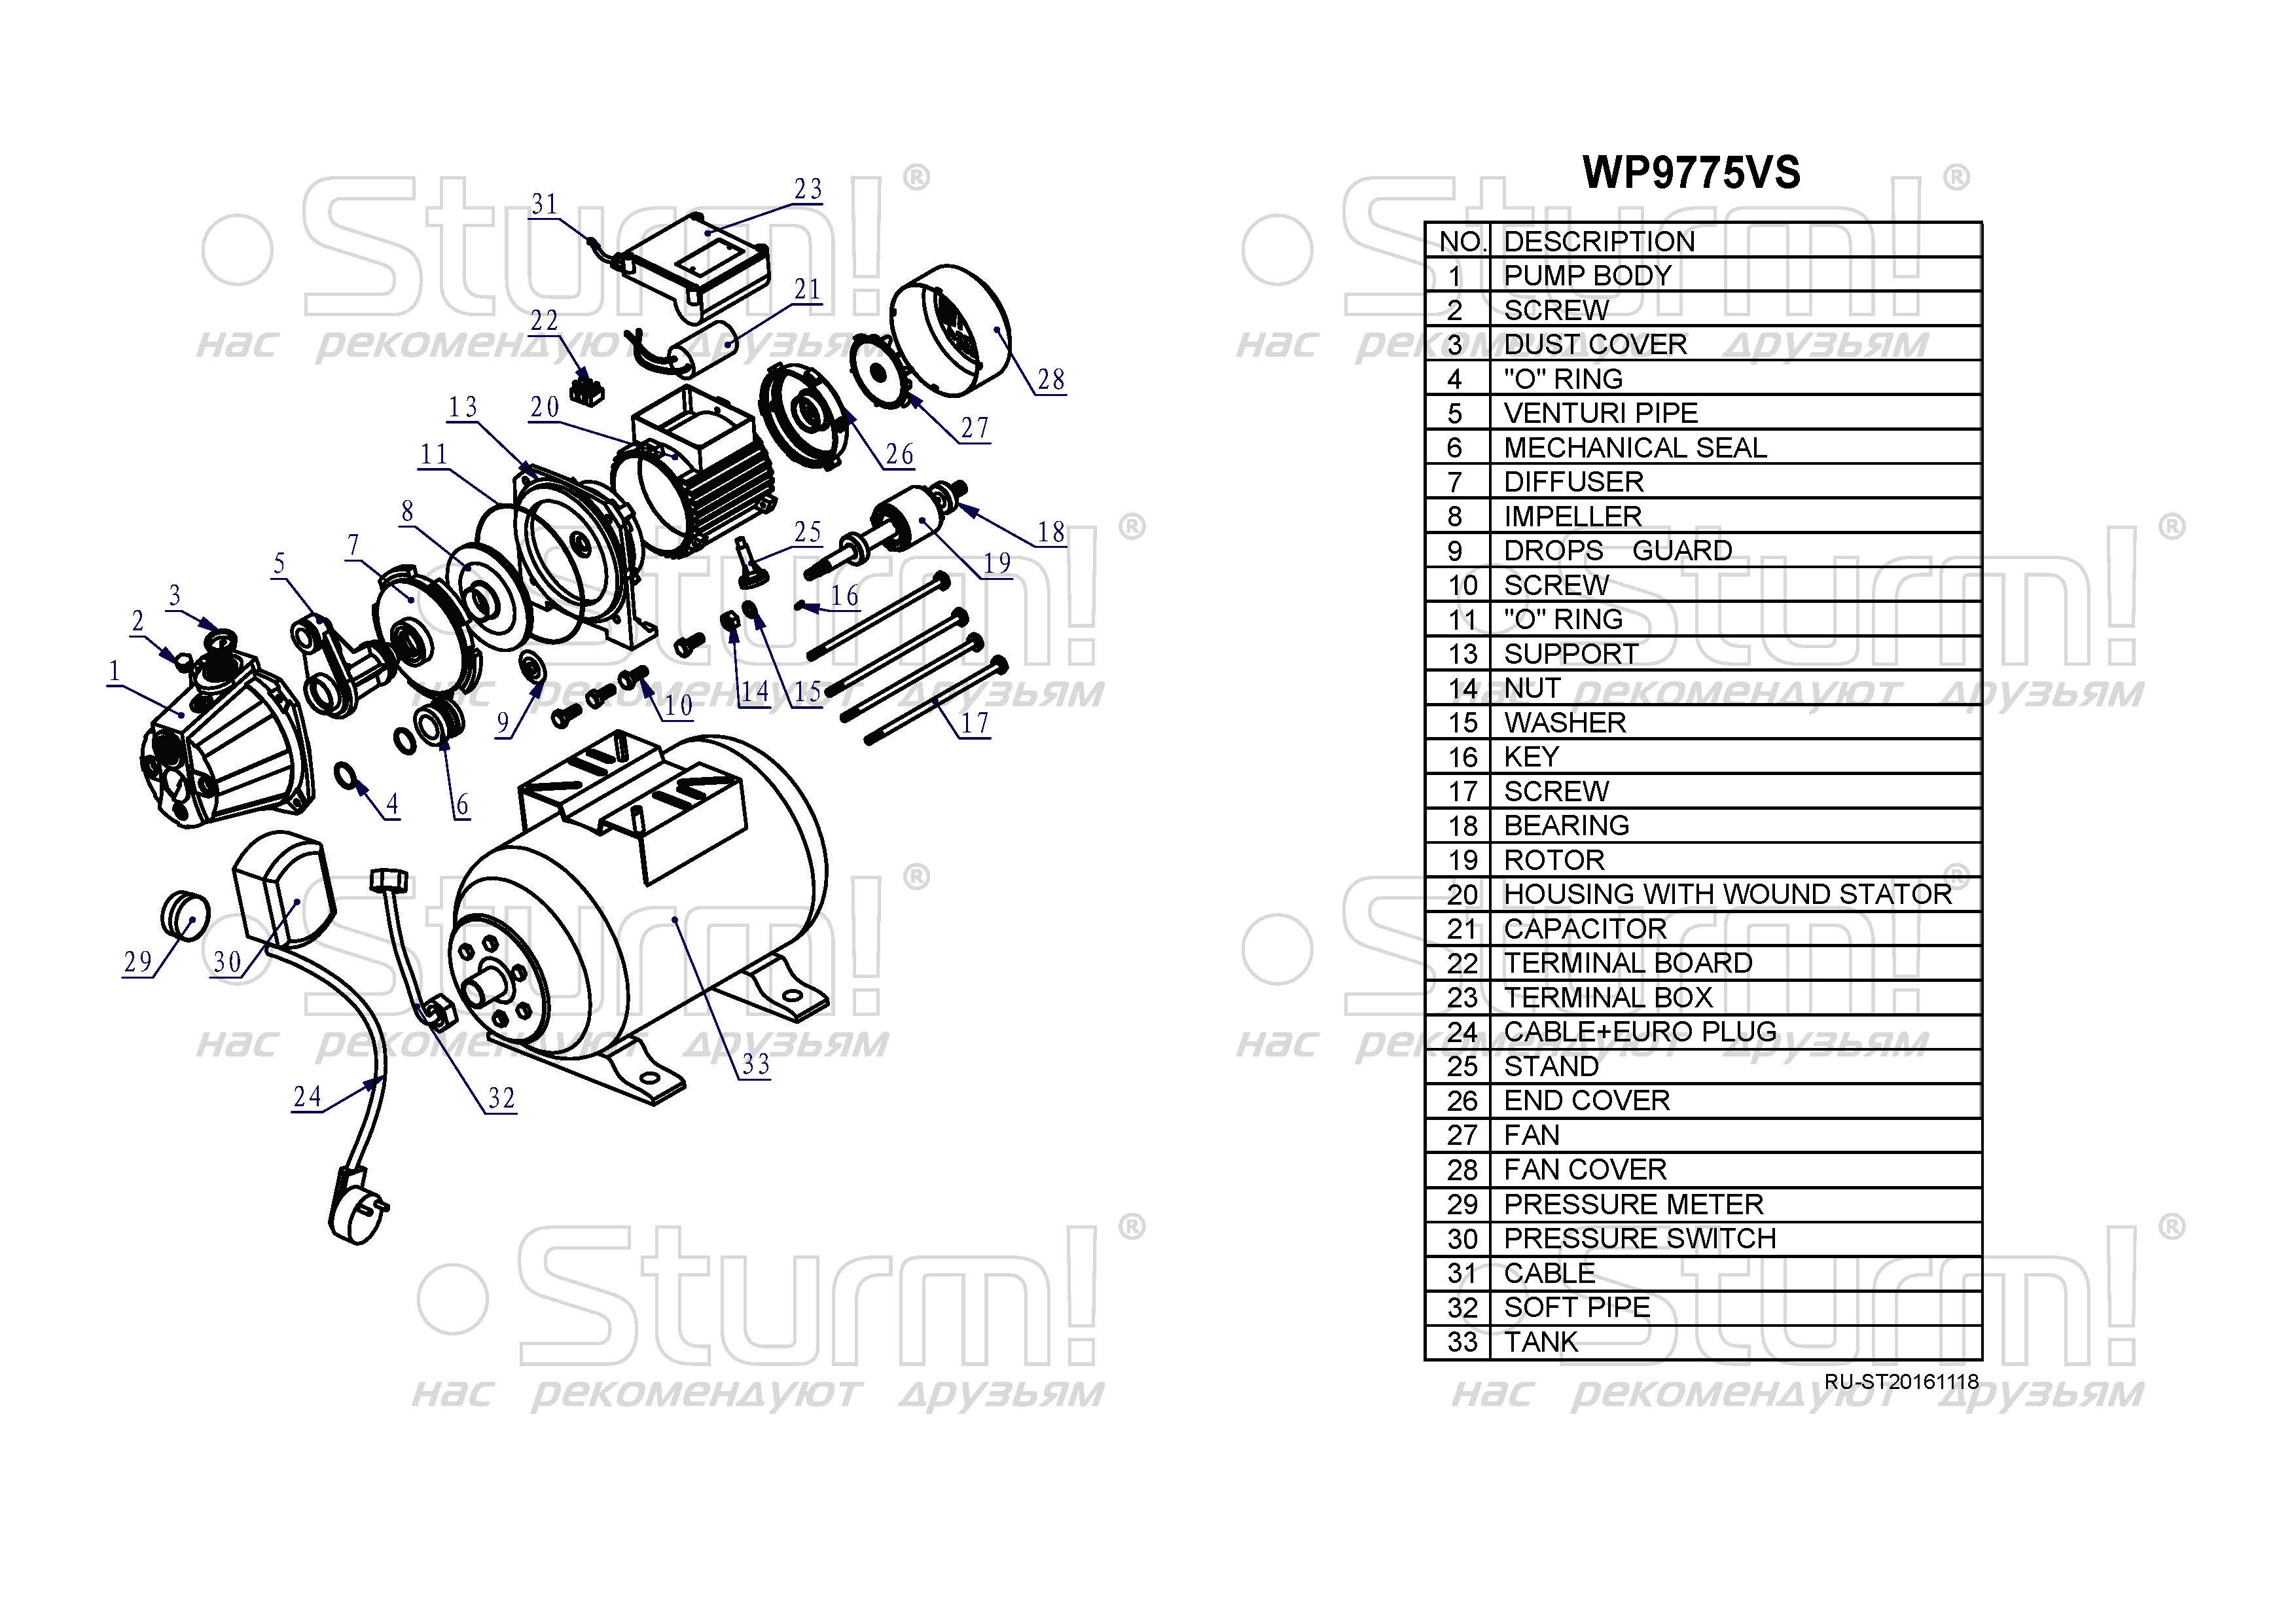  станция Sturm! WP9775VS - описание, характеристики, цена .